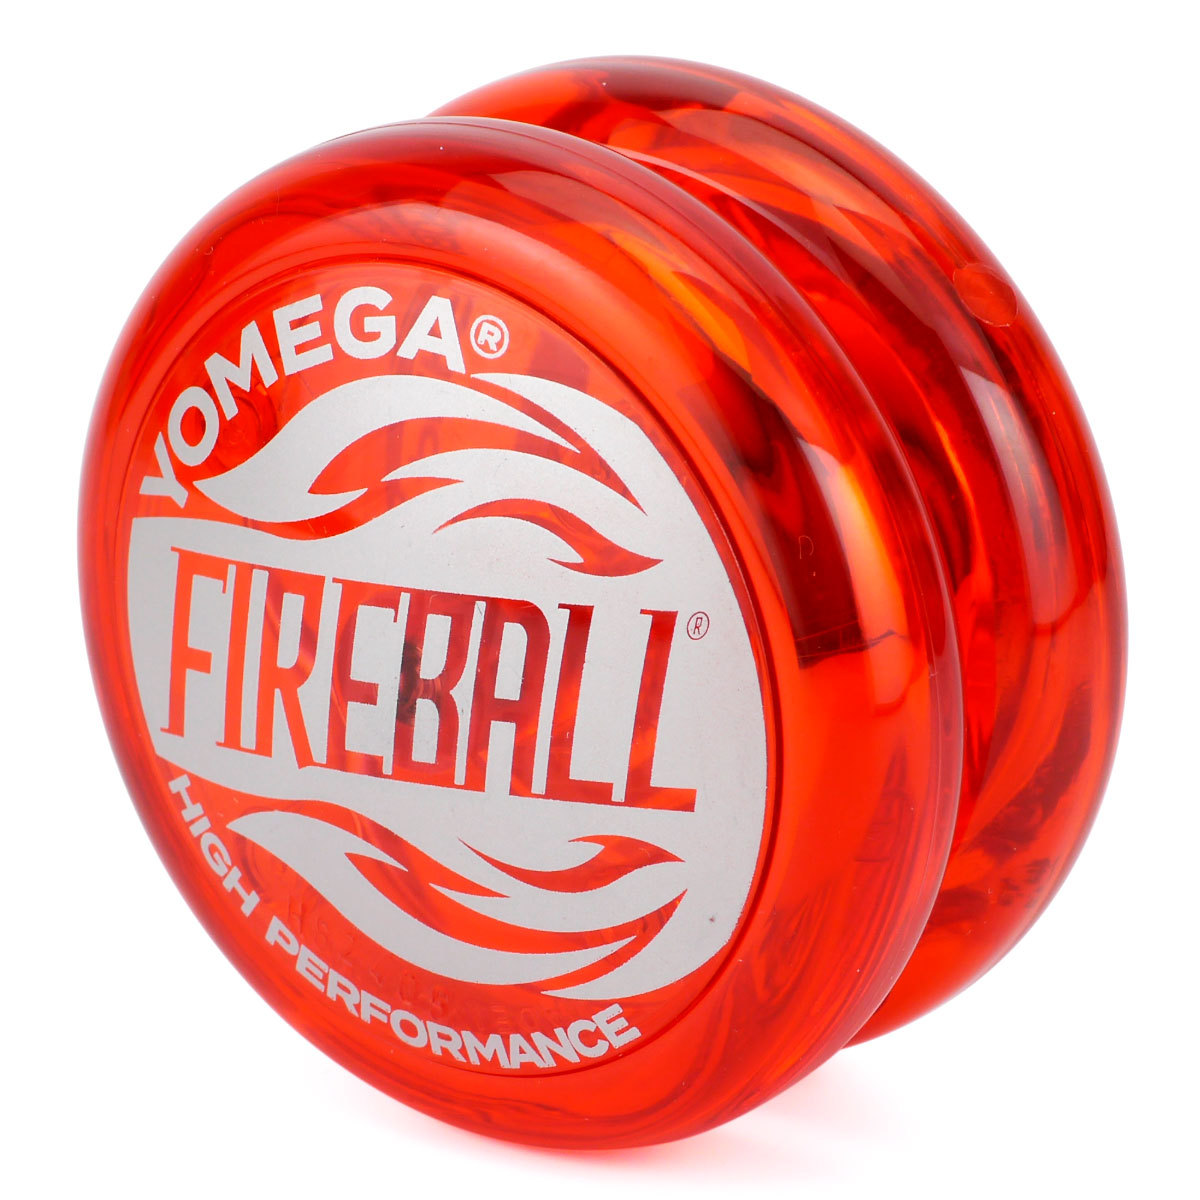 ヨメガ ファイヤーボール / YOMEGA Fireball